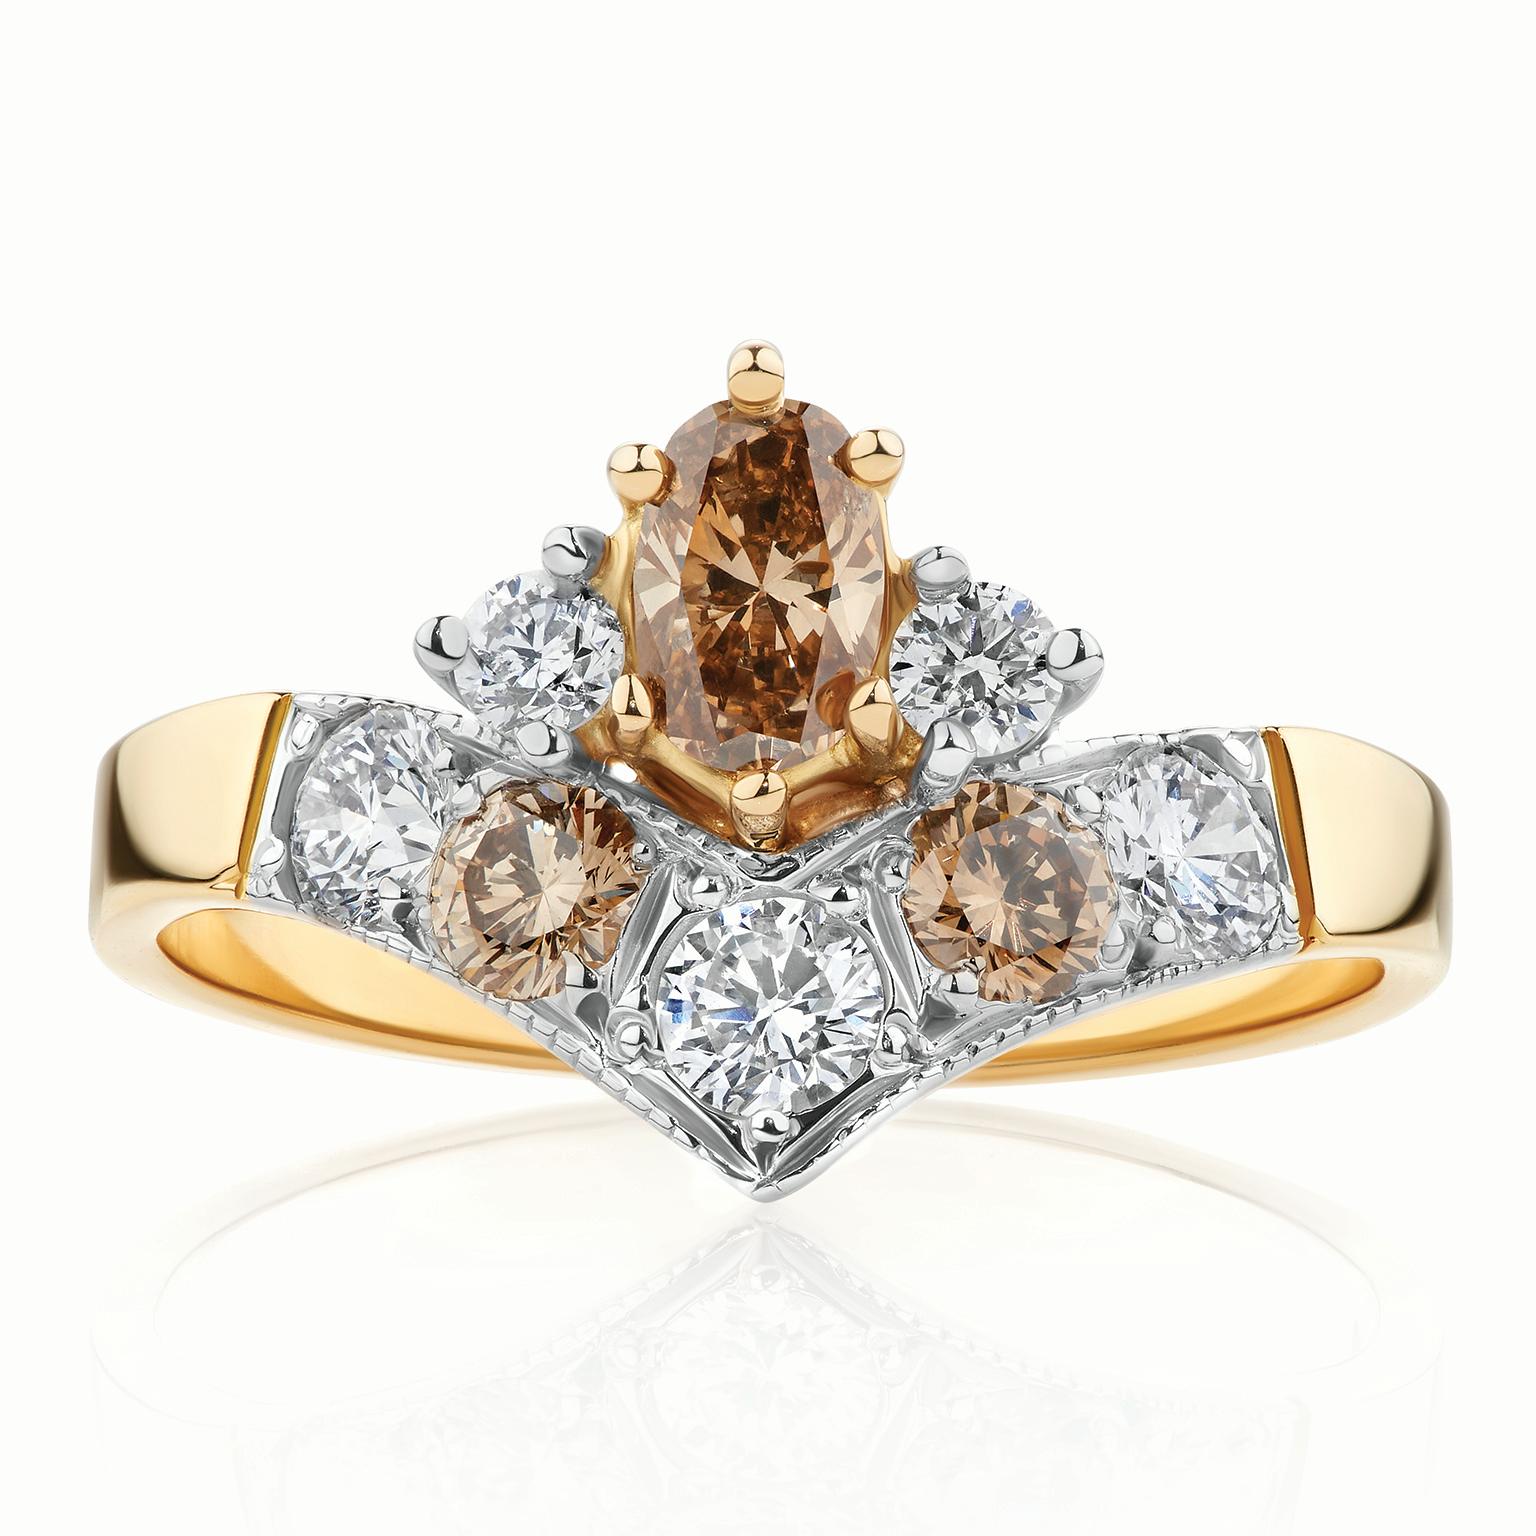 La bague en diamants de type Argyle géométrique de Paul Amey a été réalisée en or jaune 18 carats avec un plateau en or blanc et des griffes en or blanc sur les diamants latéraux. Le diamant présenté est un diamant ovale C6 de type Argyle de 32pt